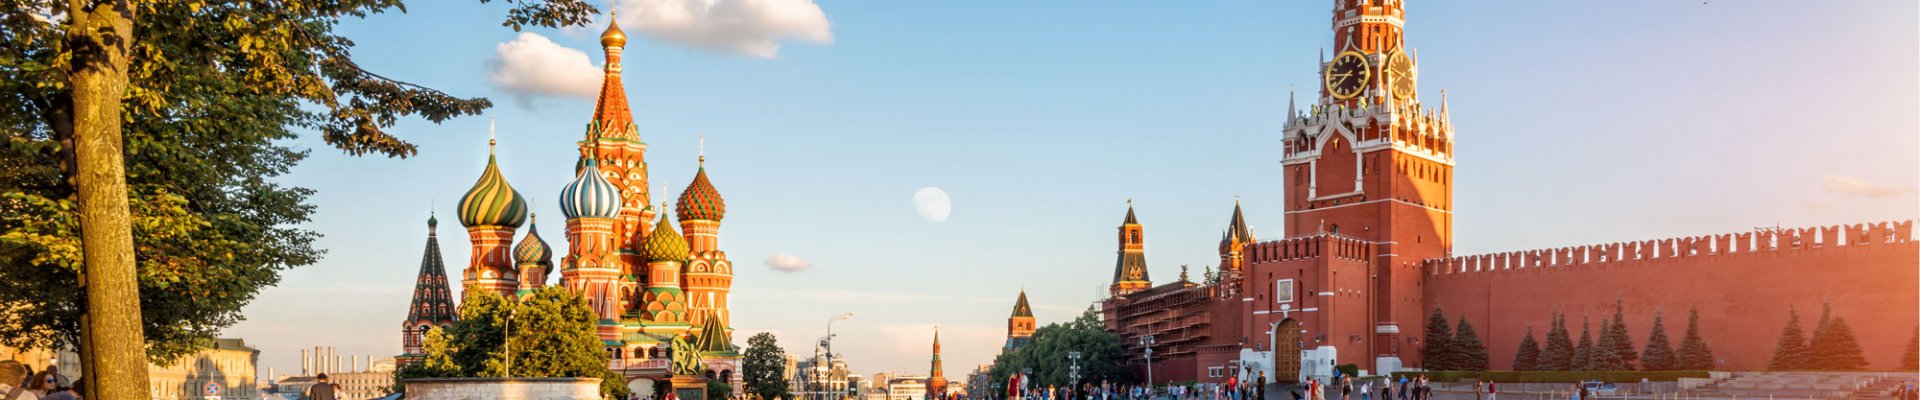 Der Rote Platz mit Blick auf die Basilius-Kathedrale und den Moskauer Kreml